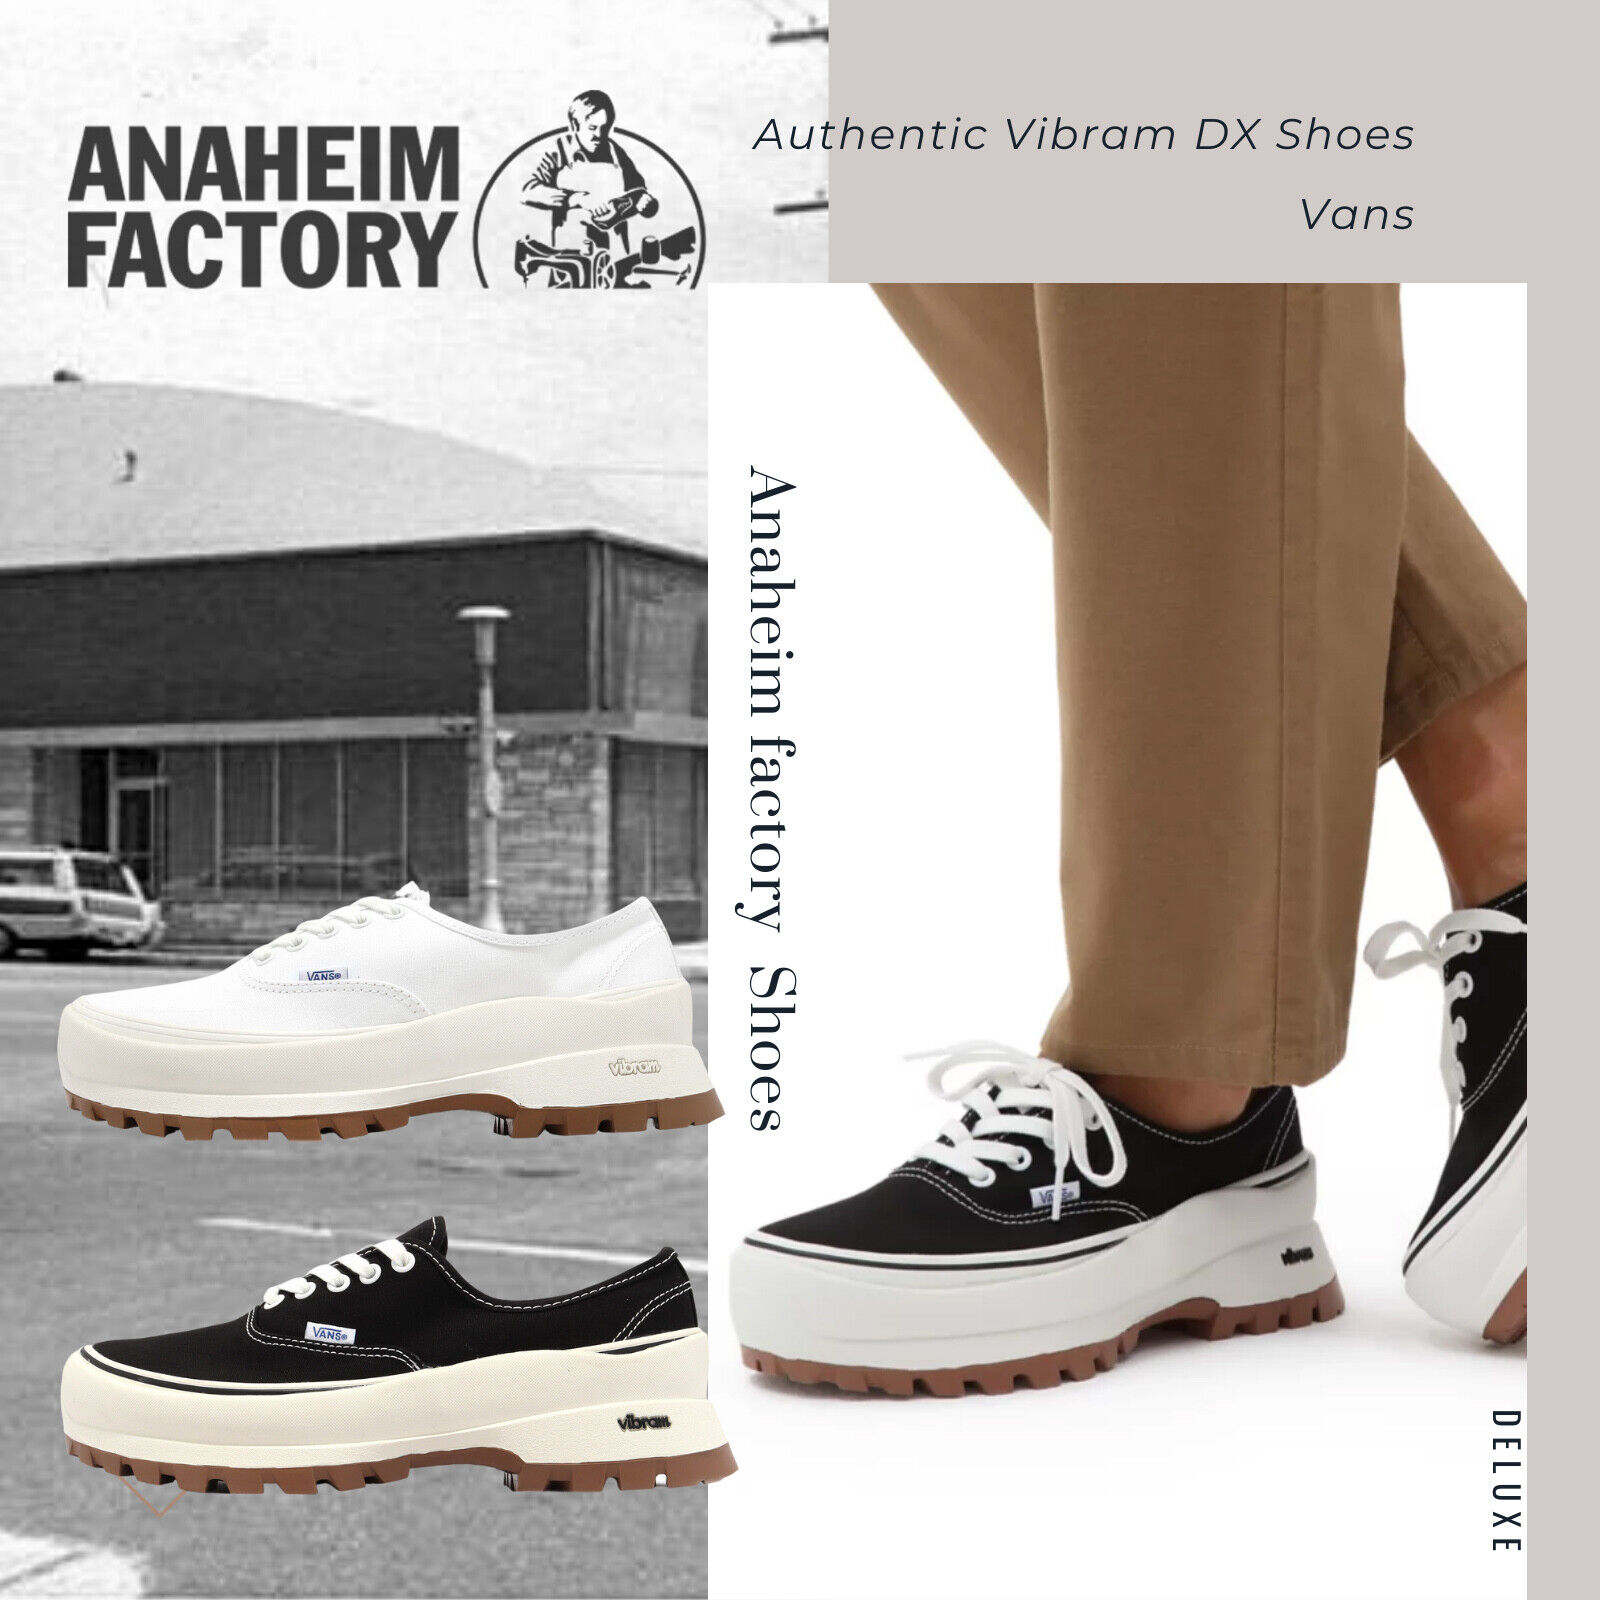 Authentic Shoe